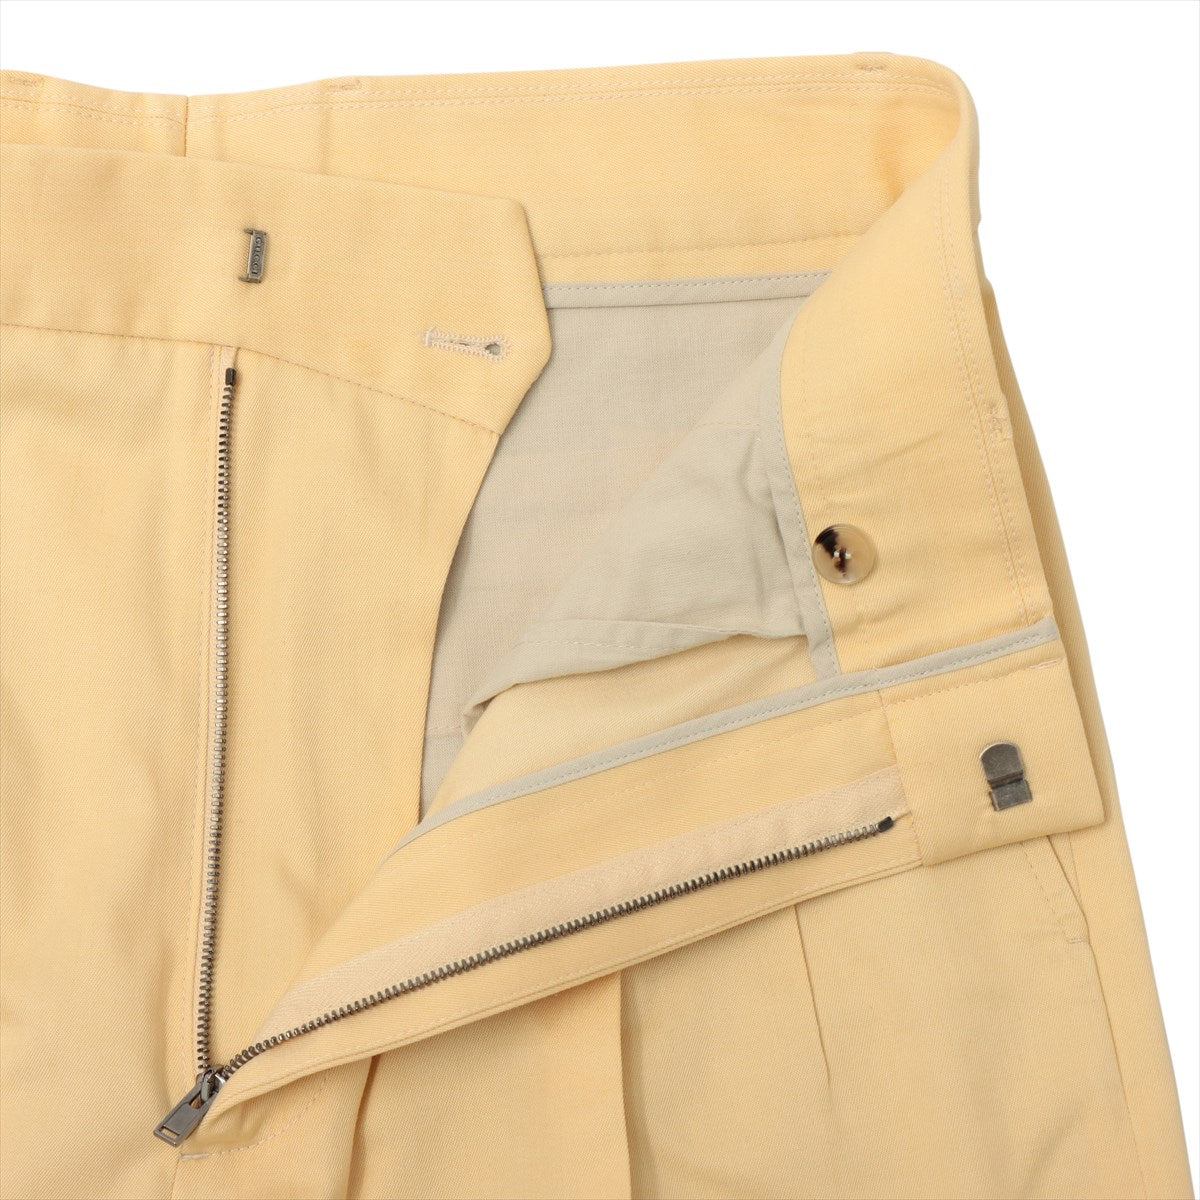 Gucci Cotton & rayon Pants 46 Men's Yellow  651686